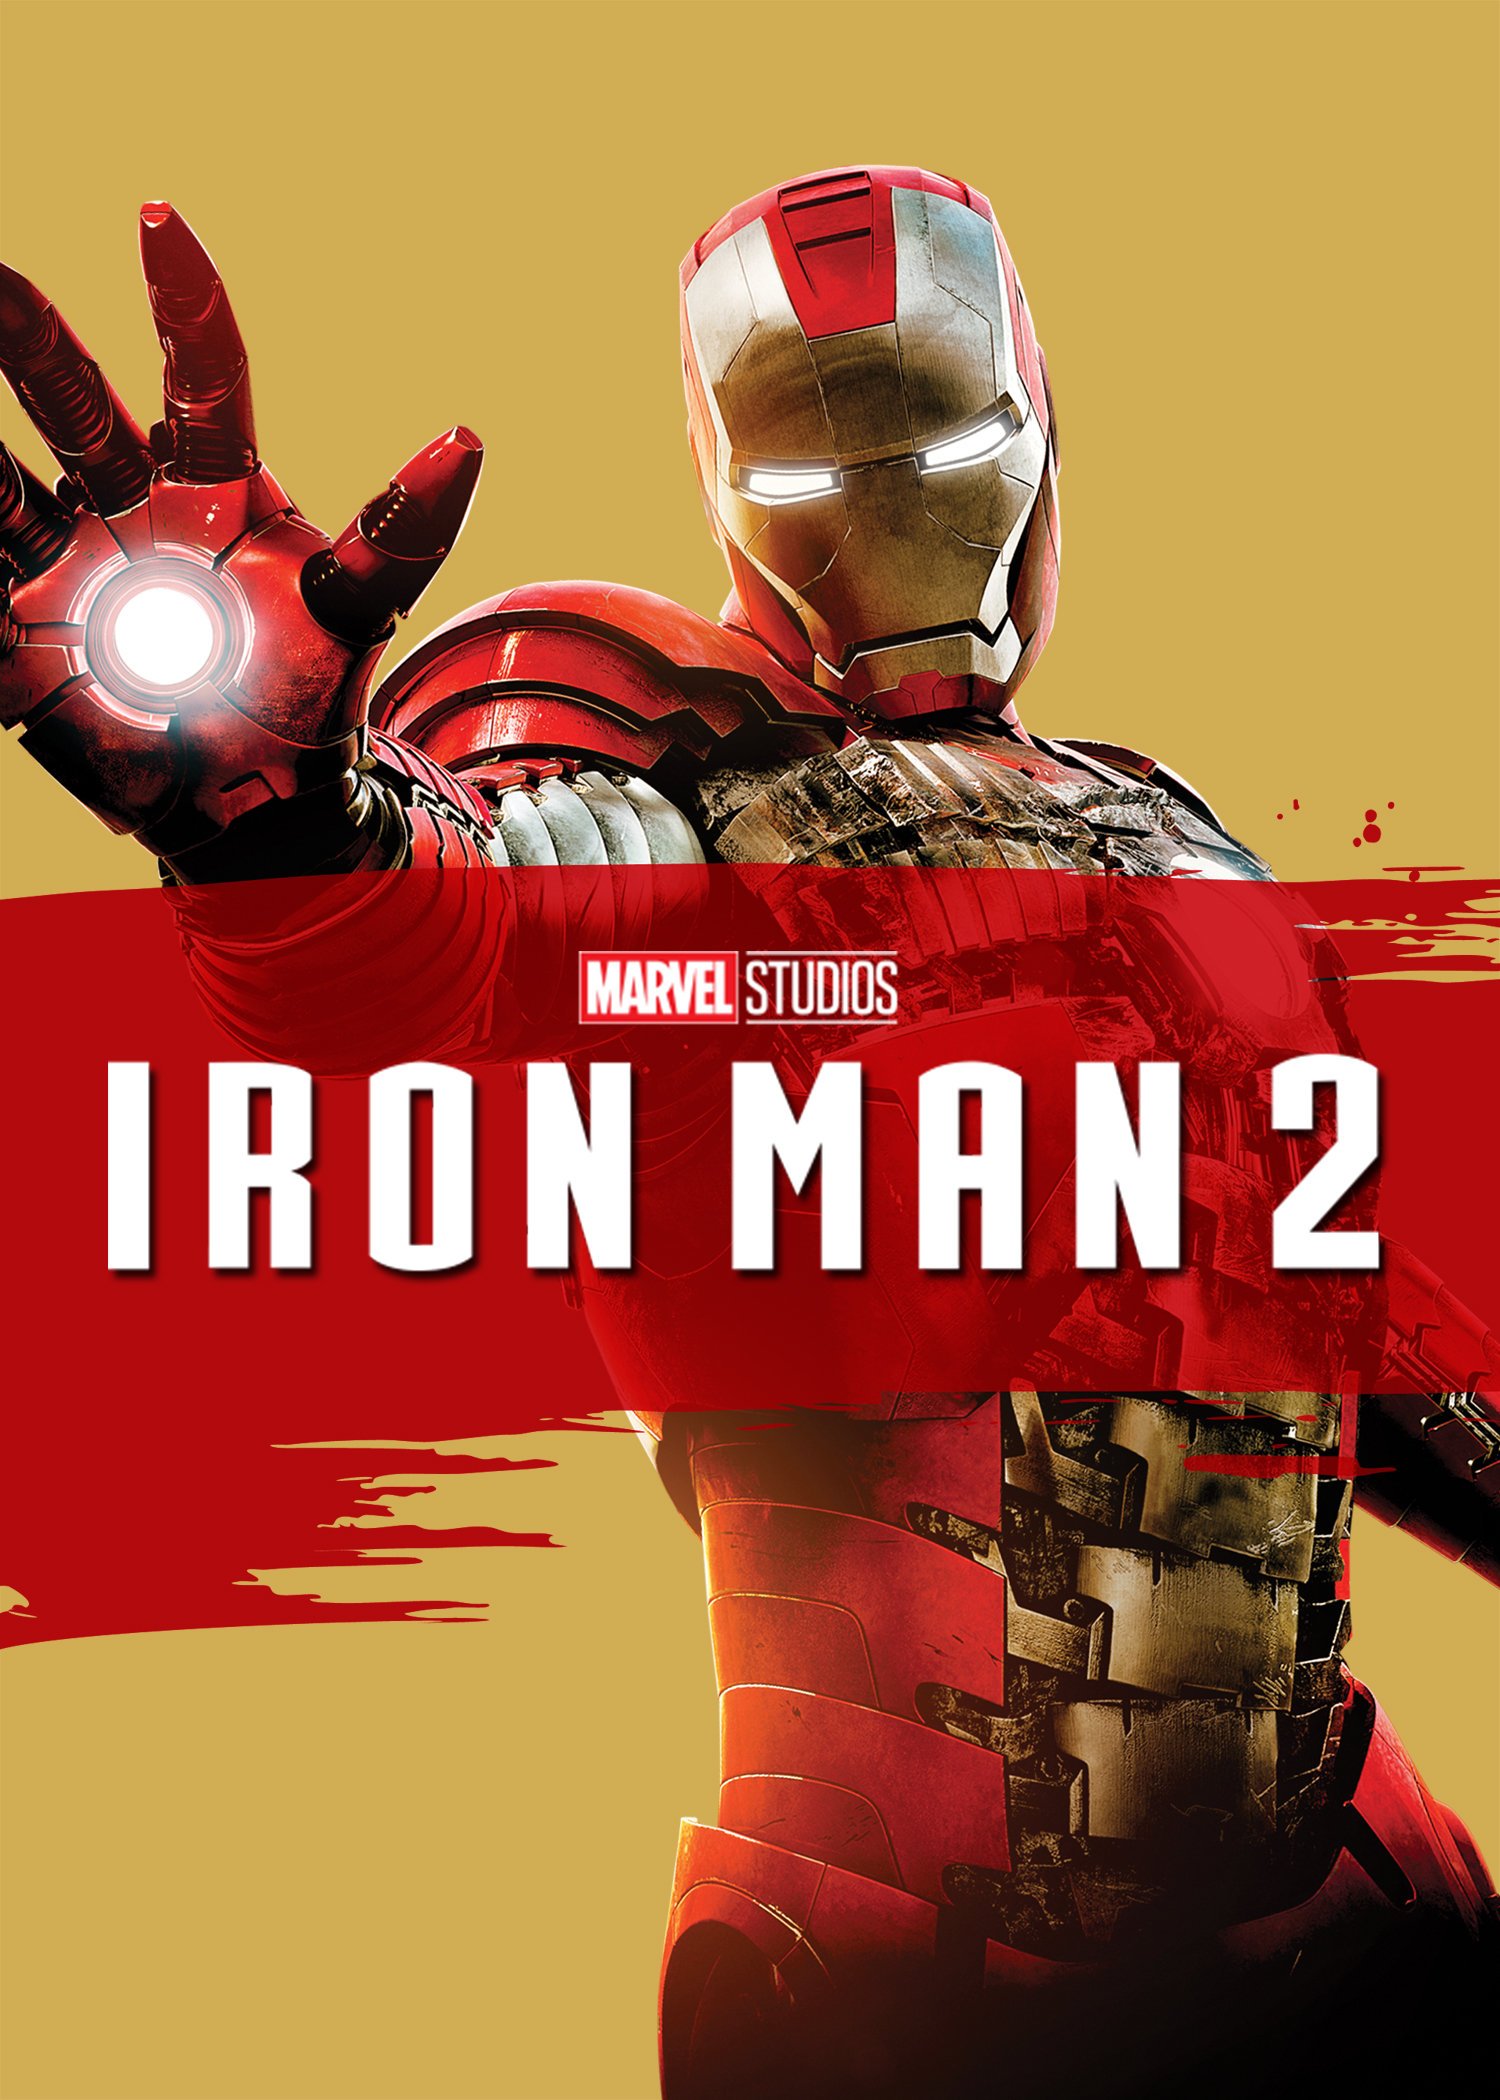 Iron Man 2 Putlockers Iron Man 2 - Filmy - Kup/Wypożycz - Rakuten TV